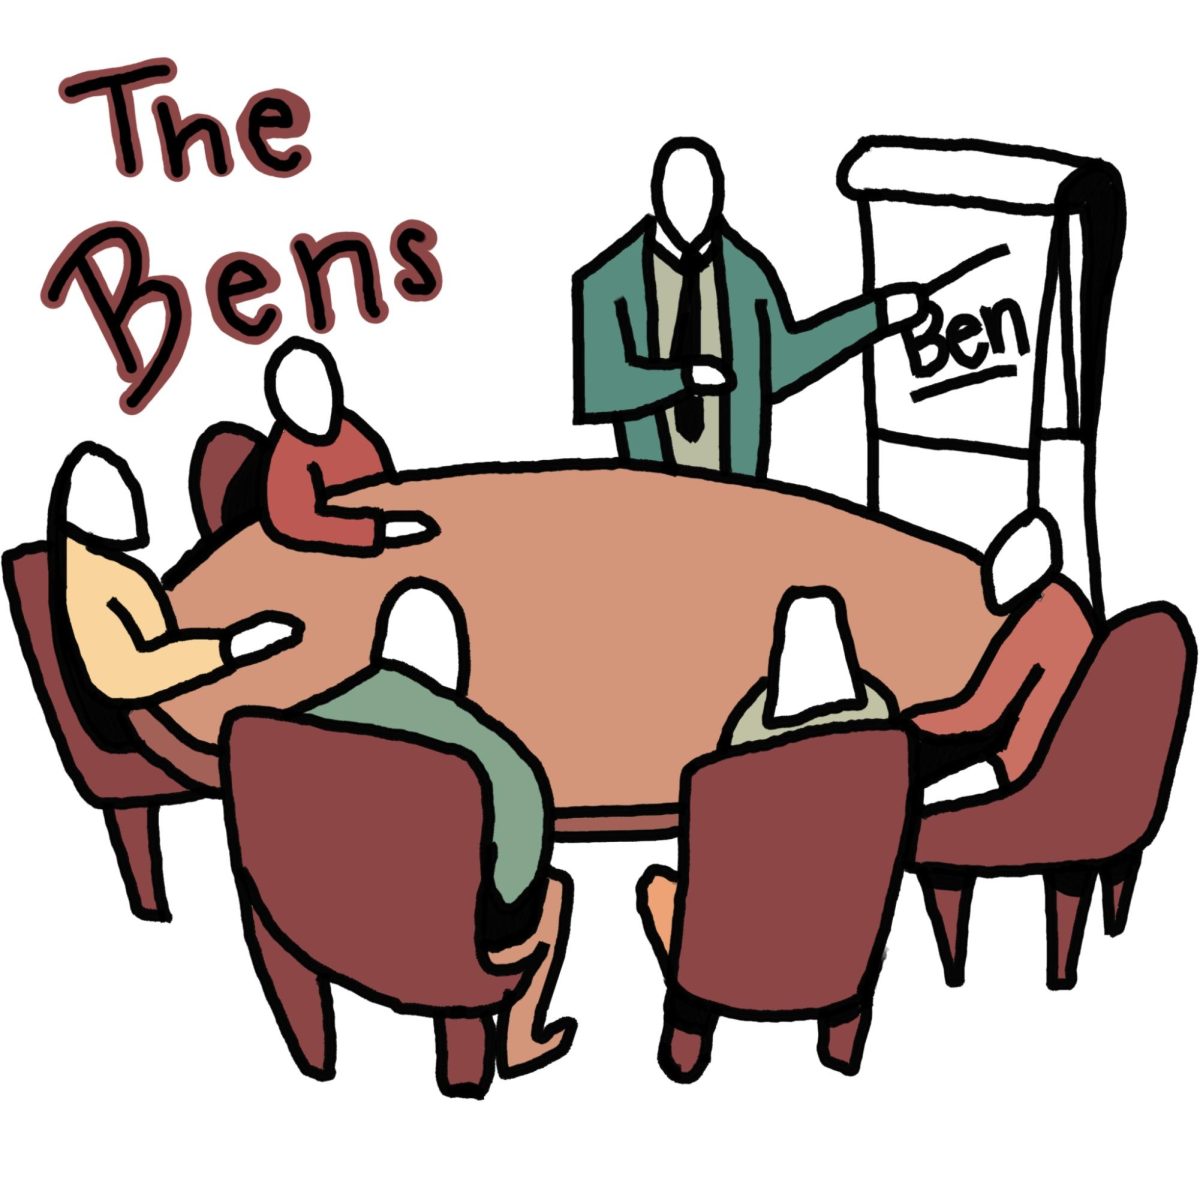 The+benfidental+benquet+of+Bens